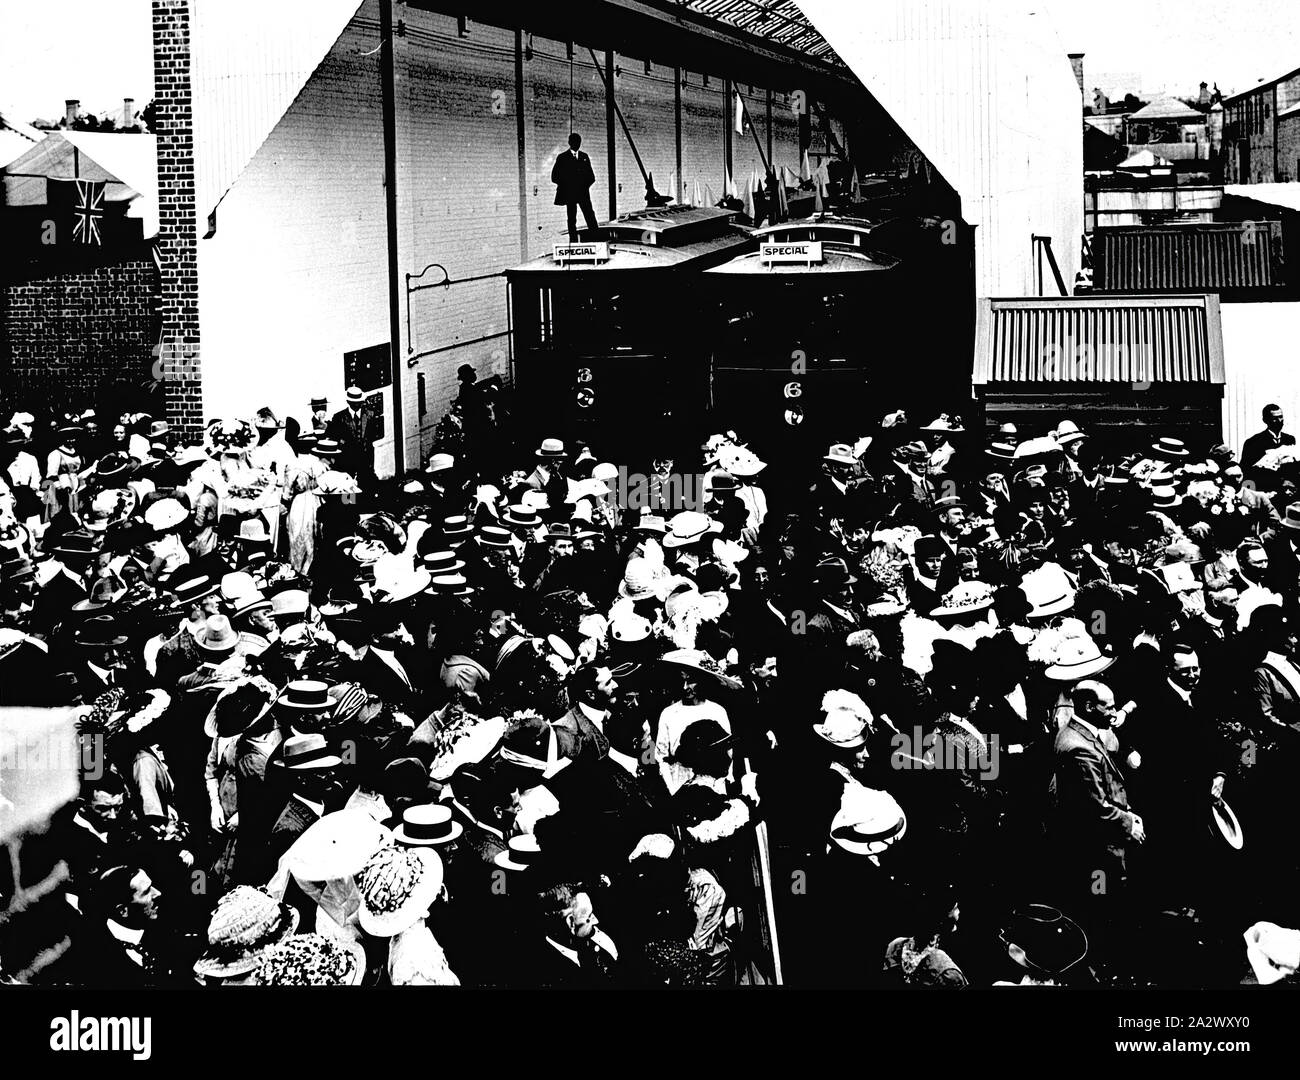 Négatif - Geelong, Victoria, vers 1912, une foule à la dépôt de tramways. Ils sont tous à la recherche vers la droite de la photo - c'est peut-être pour l'inauguration du tramway Banque D'Images